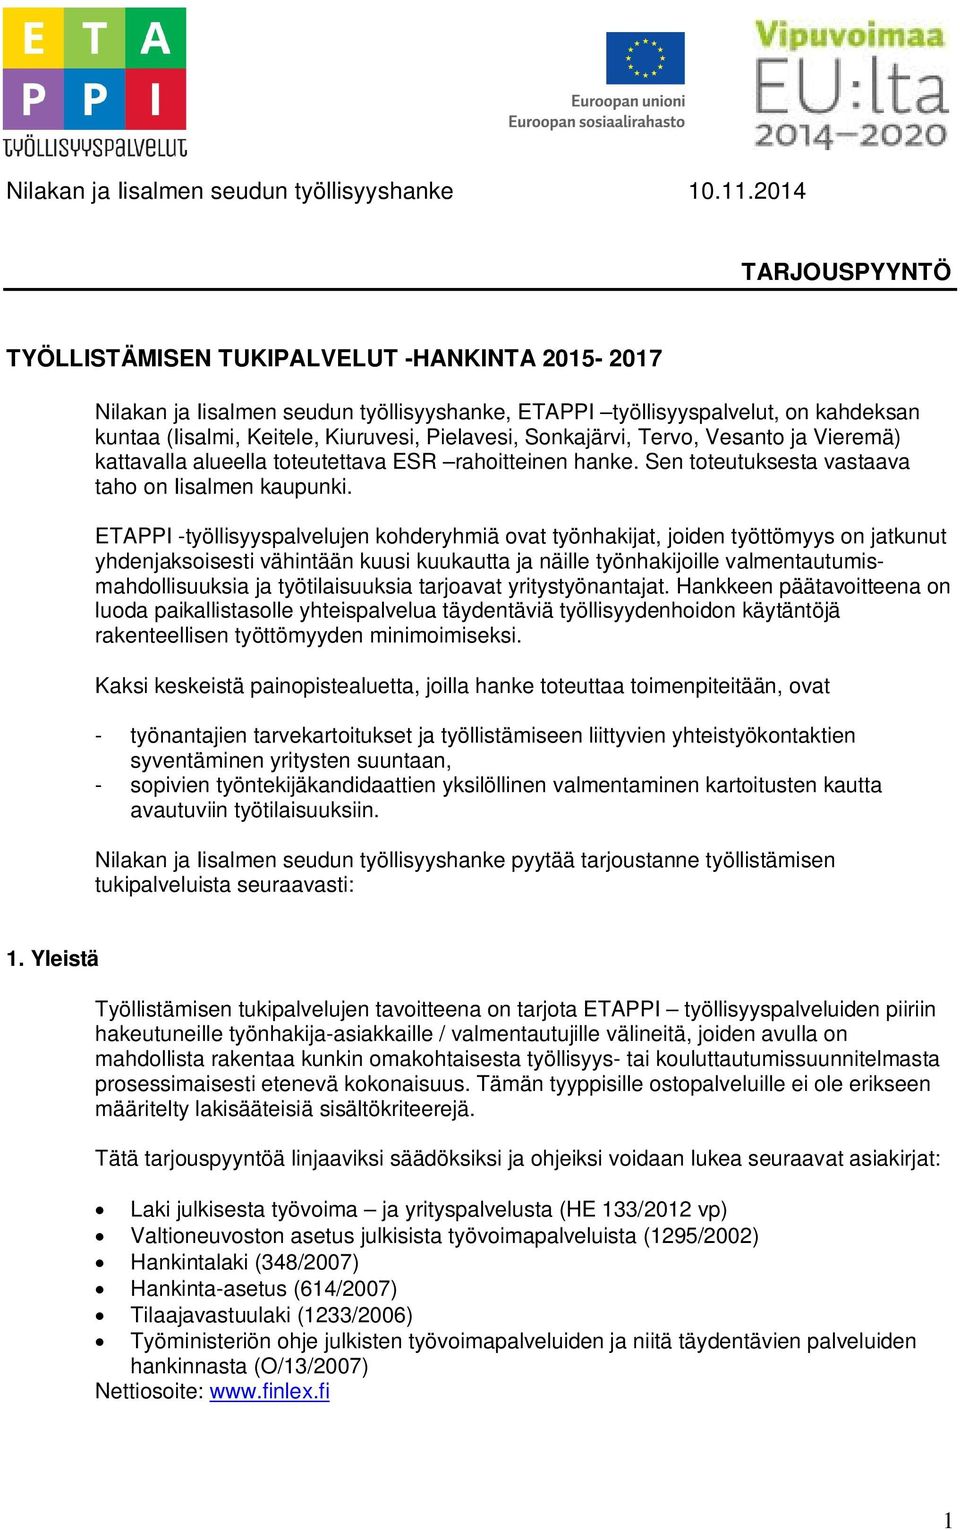 Sonkajärvi, Tervo, Vesanto ja Vieremä) kattavalla alueella toteutettava ESR rahoitteinen hanke. Sen toteutuksesta vastaava taho on Iisalmen kaupunki.